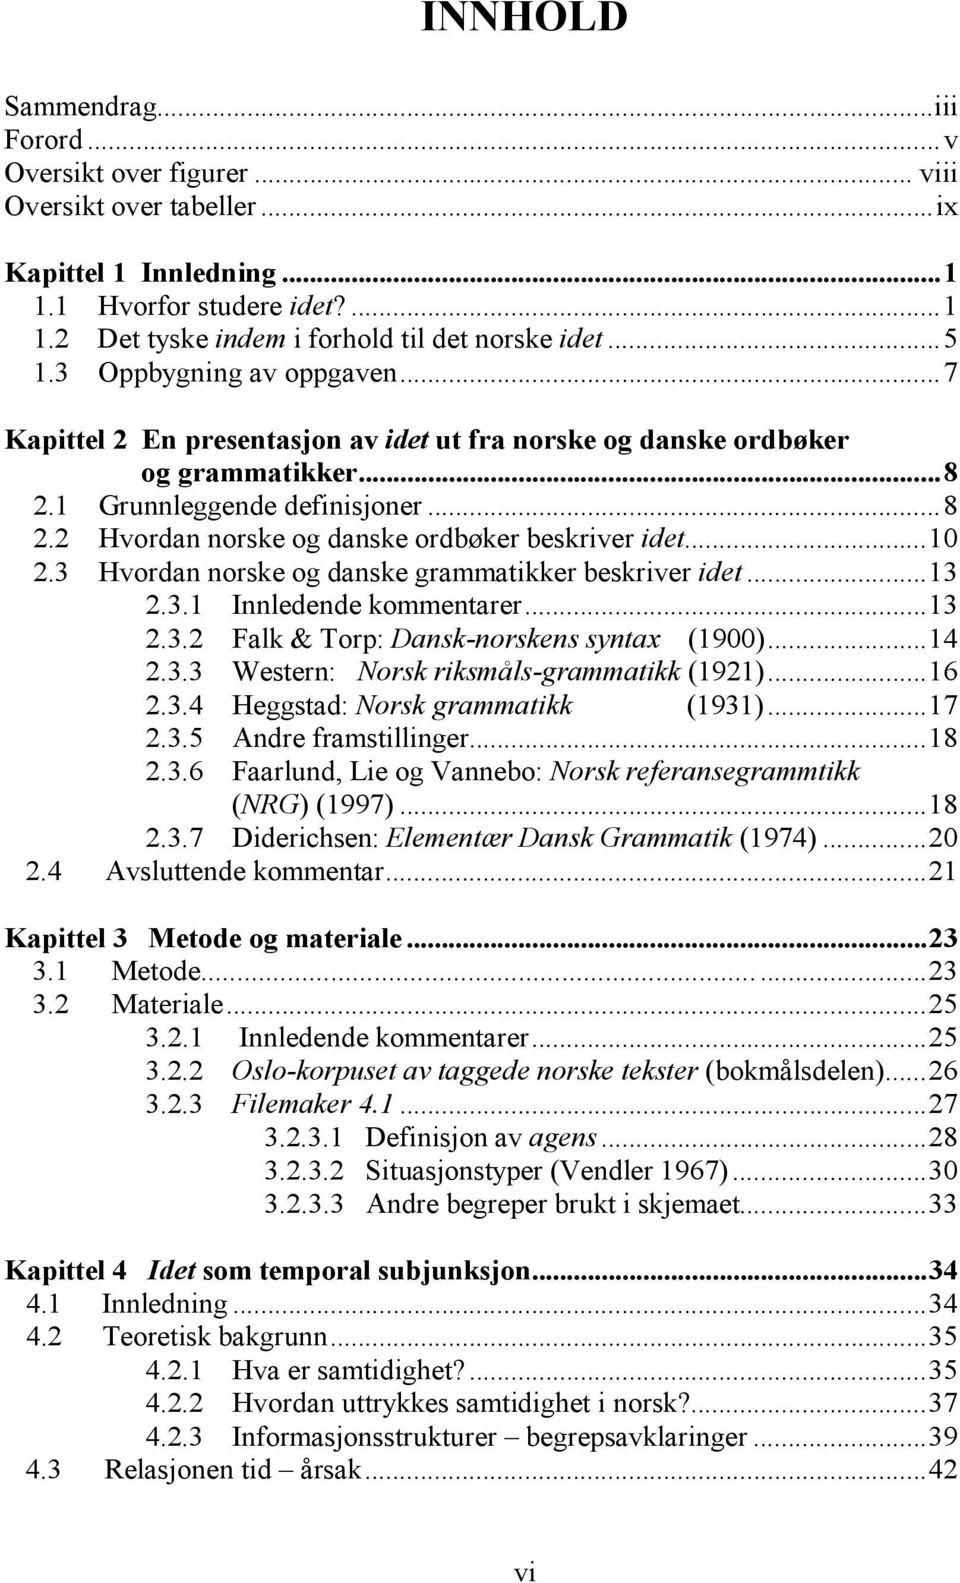 ..10 2.3 Hvordan norske og danske grammatikker beskriver idet...13 2.3.1 Innledende kommentarer...13 2.3.2 Falk & Torp: Dansk-norskens syntax (1900)...14 2.3.3 Western: Norsk riksmåls-grammatikk (1921).